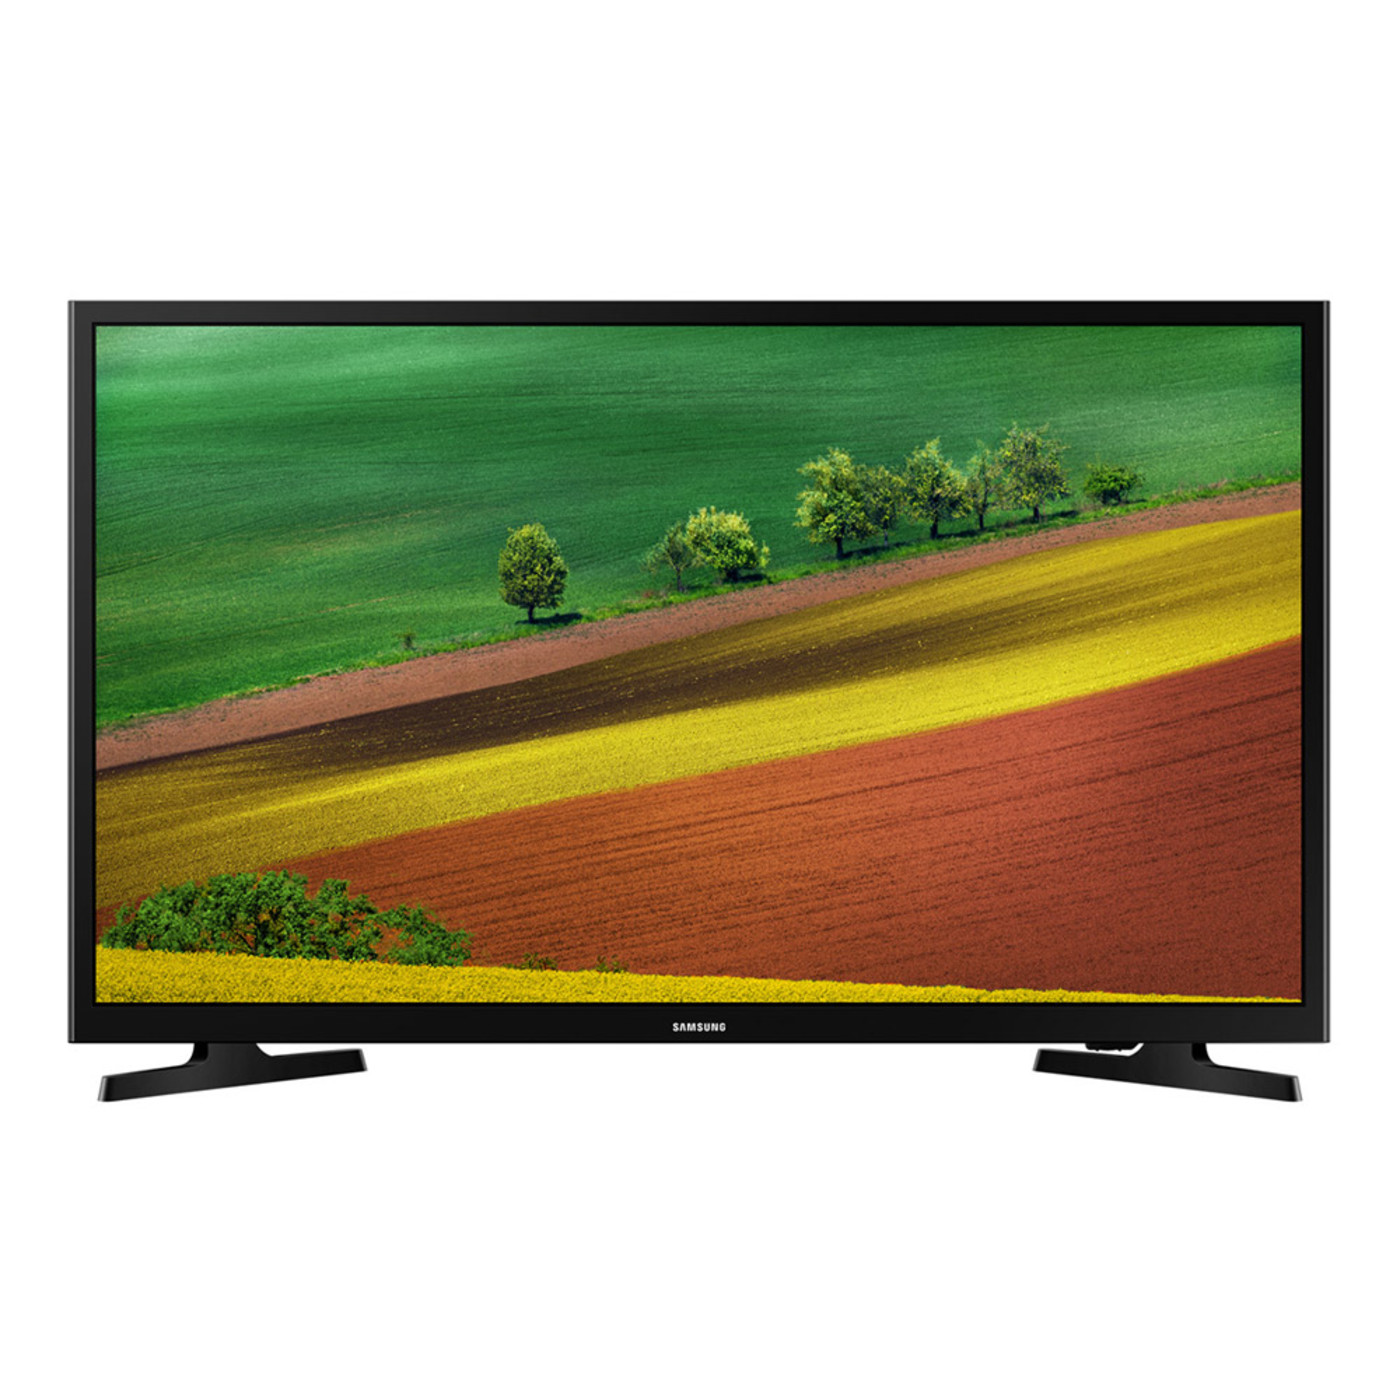 ข้อมูลเกี่ยวกับ SAMSUNG LED Digital TV 32 นิ้ว รุ่น UA32N4003AKXXT ความละเอียดภาพระดับ HD,ภาพสดใส,สมจริง-รับประกันศูนย์1ปี